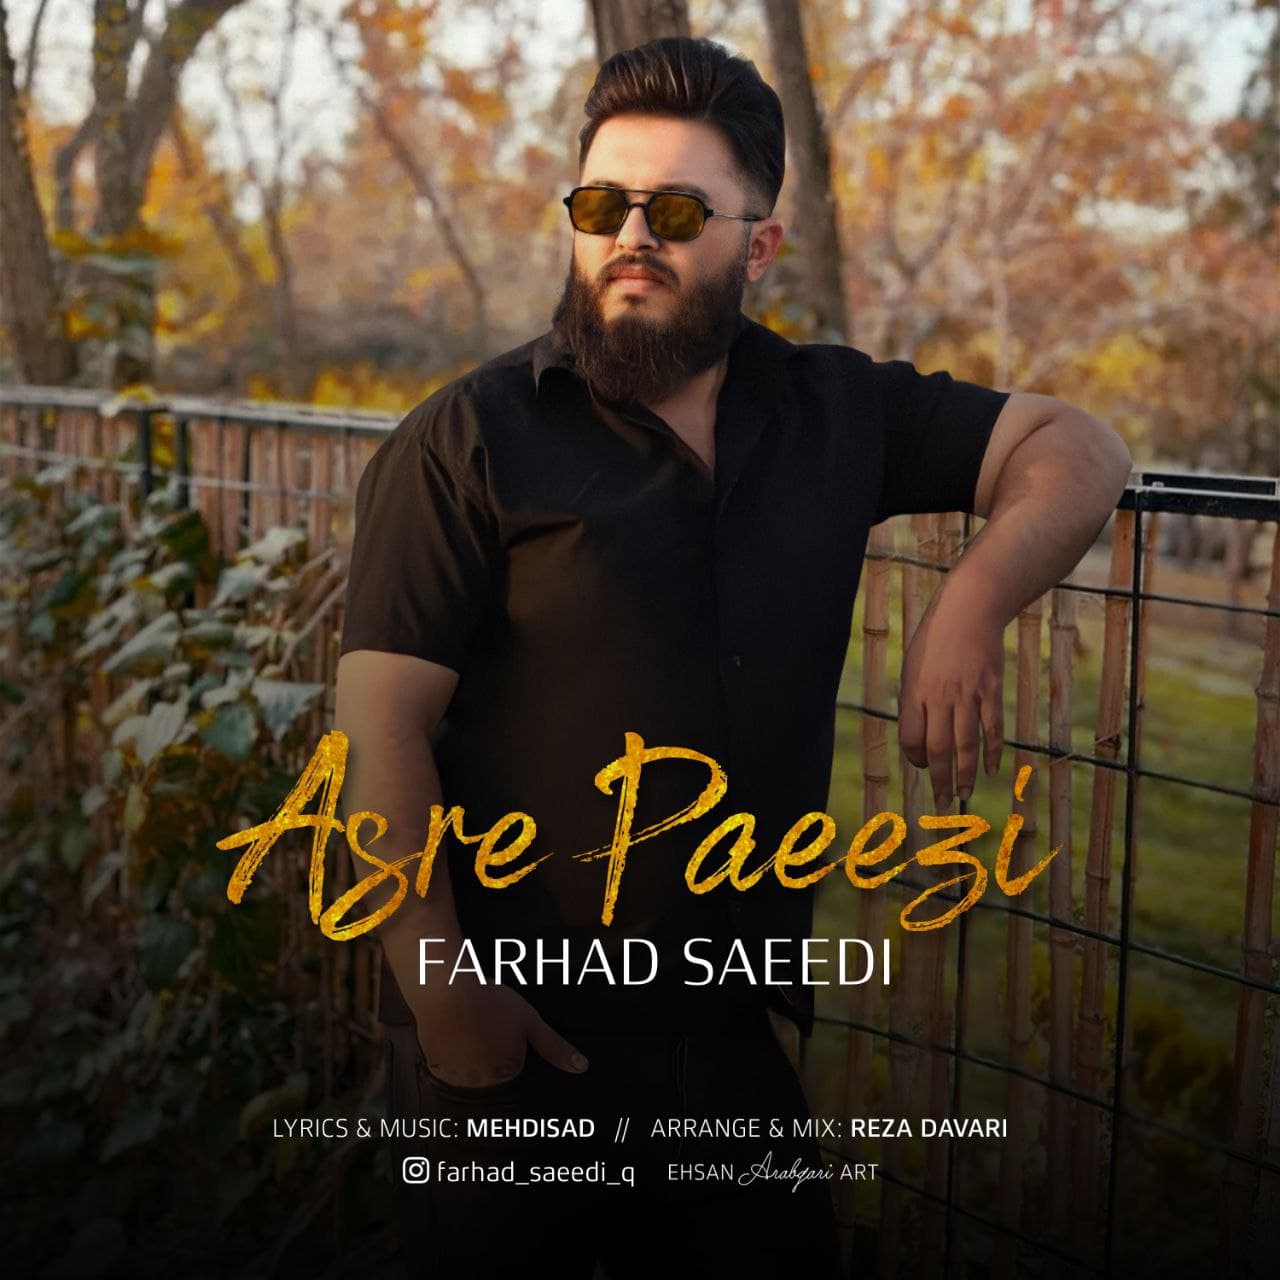 Farhad saeedi – Asre Paeezi